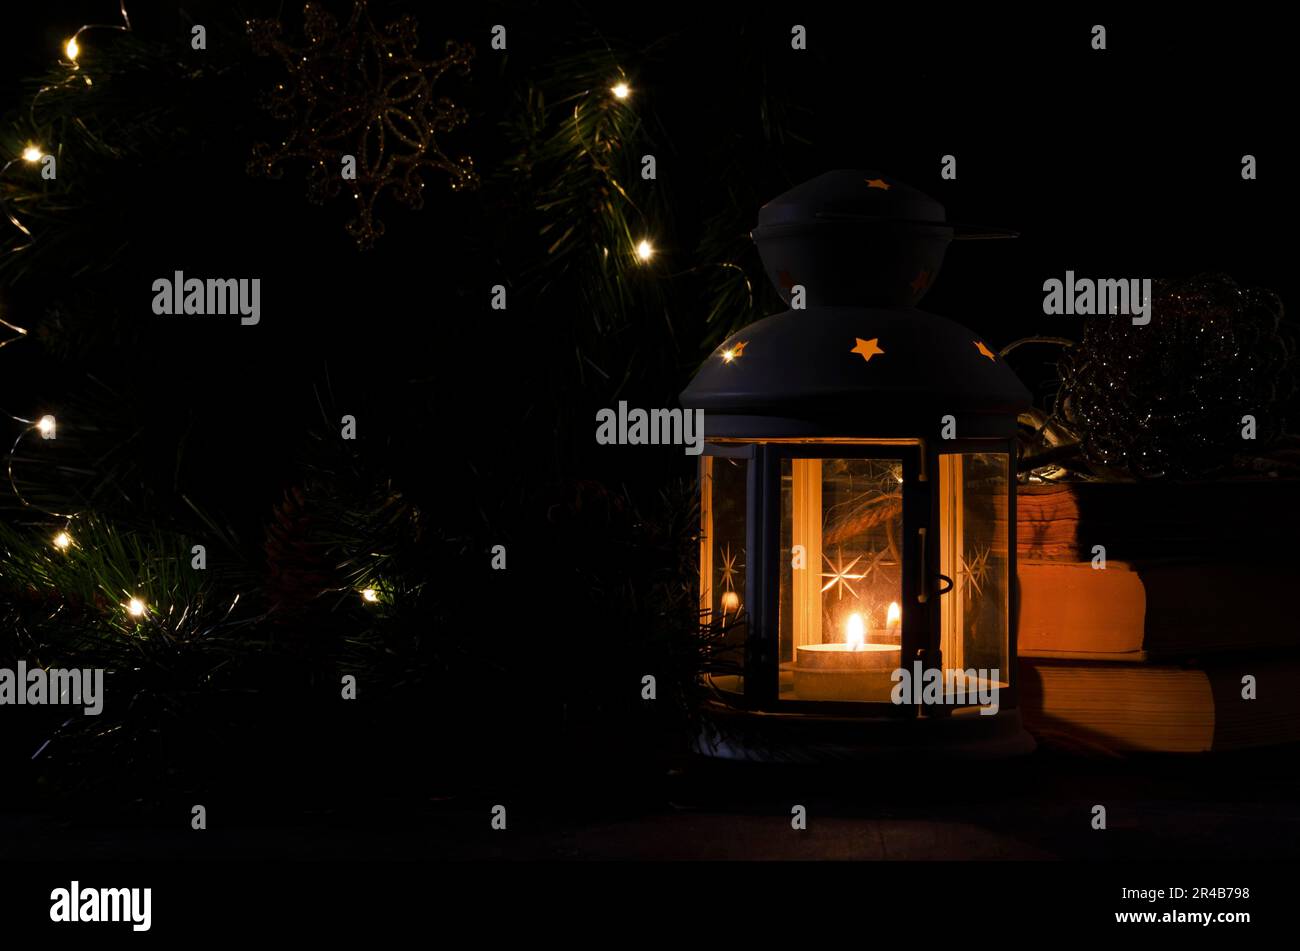 Lanterne blanche avec une bougie allumée. Livres, branche d'arbre de noël et lumières sur fond. Image sombre de nuit. Humeur mystère de Noël Banque D'Images